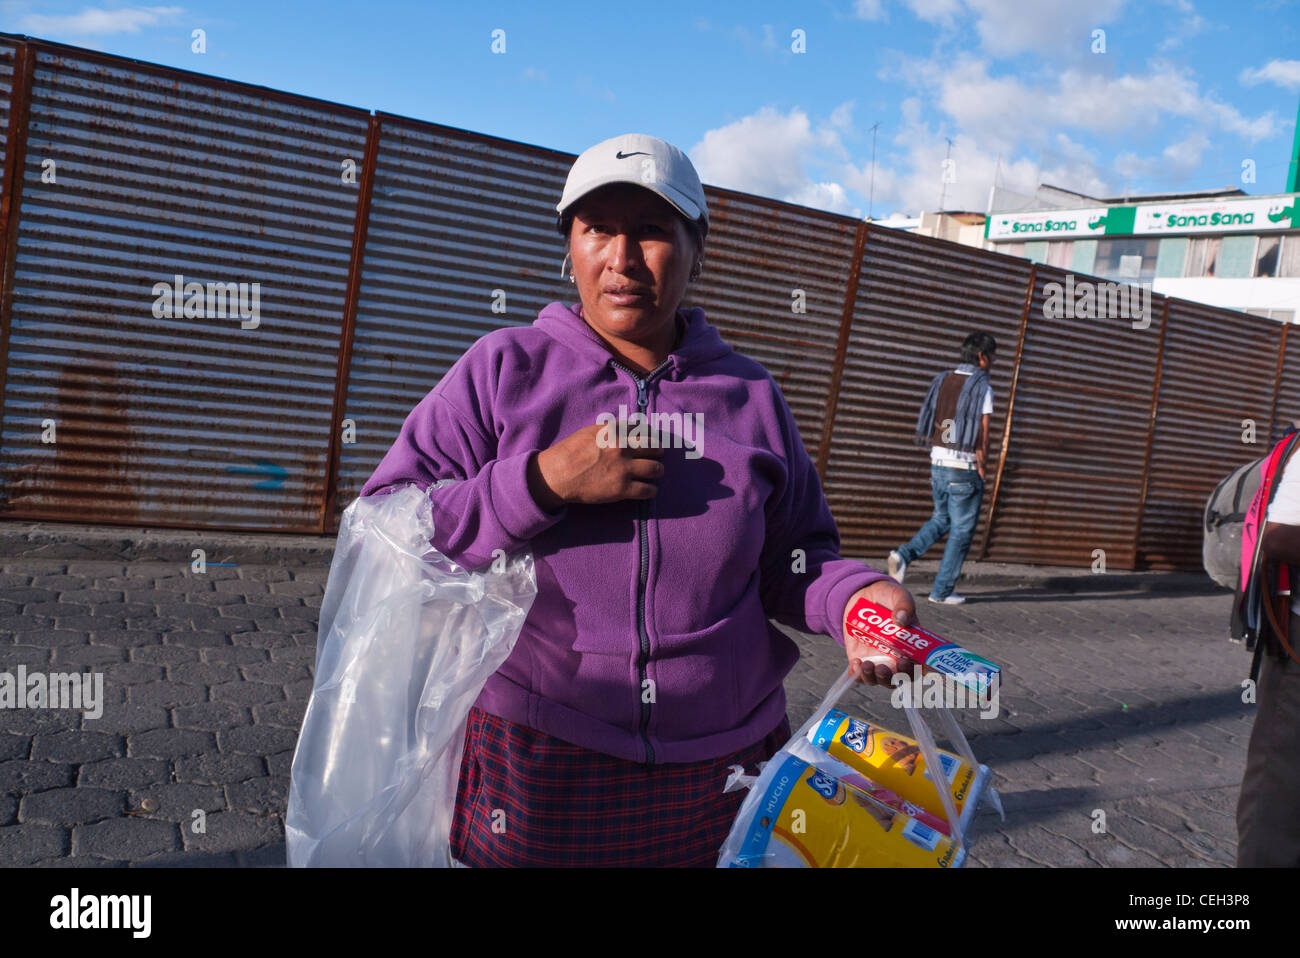 Eine 40-50 Jahre alten Hispanic Frau überquert eine Straße in Latacunga, Ecuador ihre Einkaufstaschen im späten Nachmittag Licht. Stockfoto